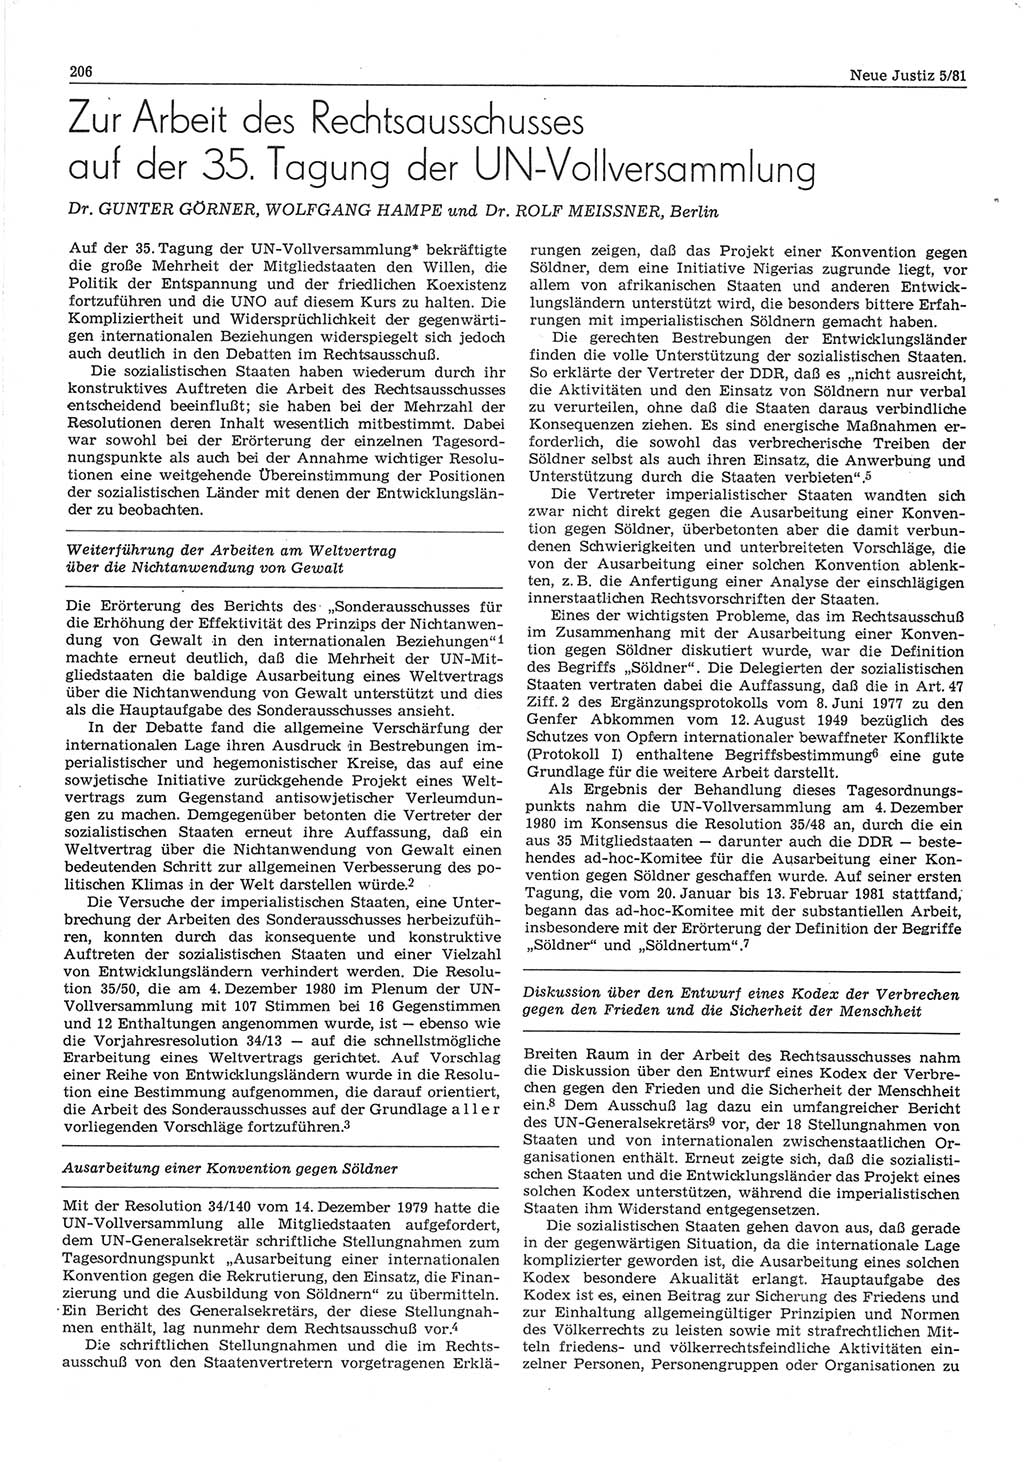 Neue Justiz (NJ), Zeitschrift für sozialistisches Recht und Gesetzlichkeit [Deutsche Demokratische Republik (DDR)], 35. Jahrgang 1981, Seite 206 (NJ DDR 1981, S. 206)